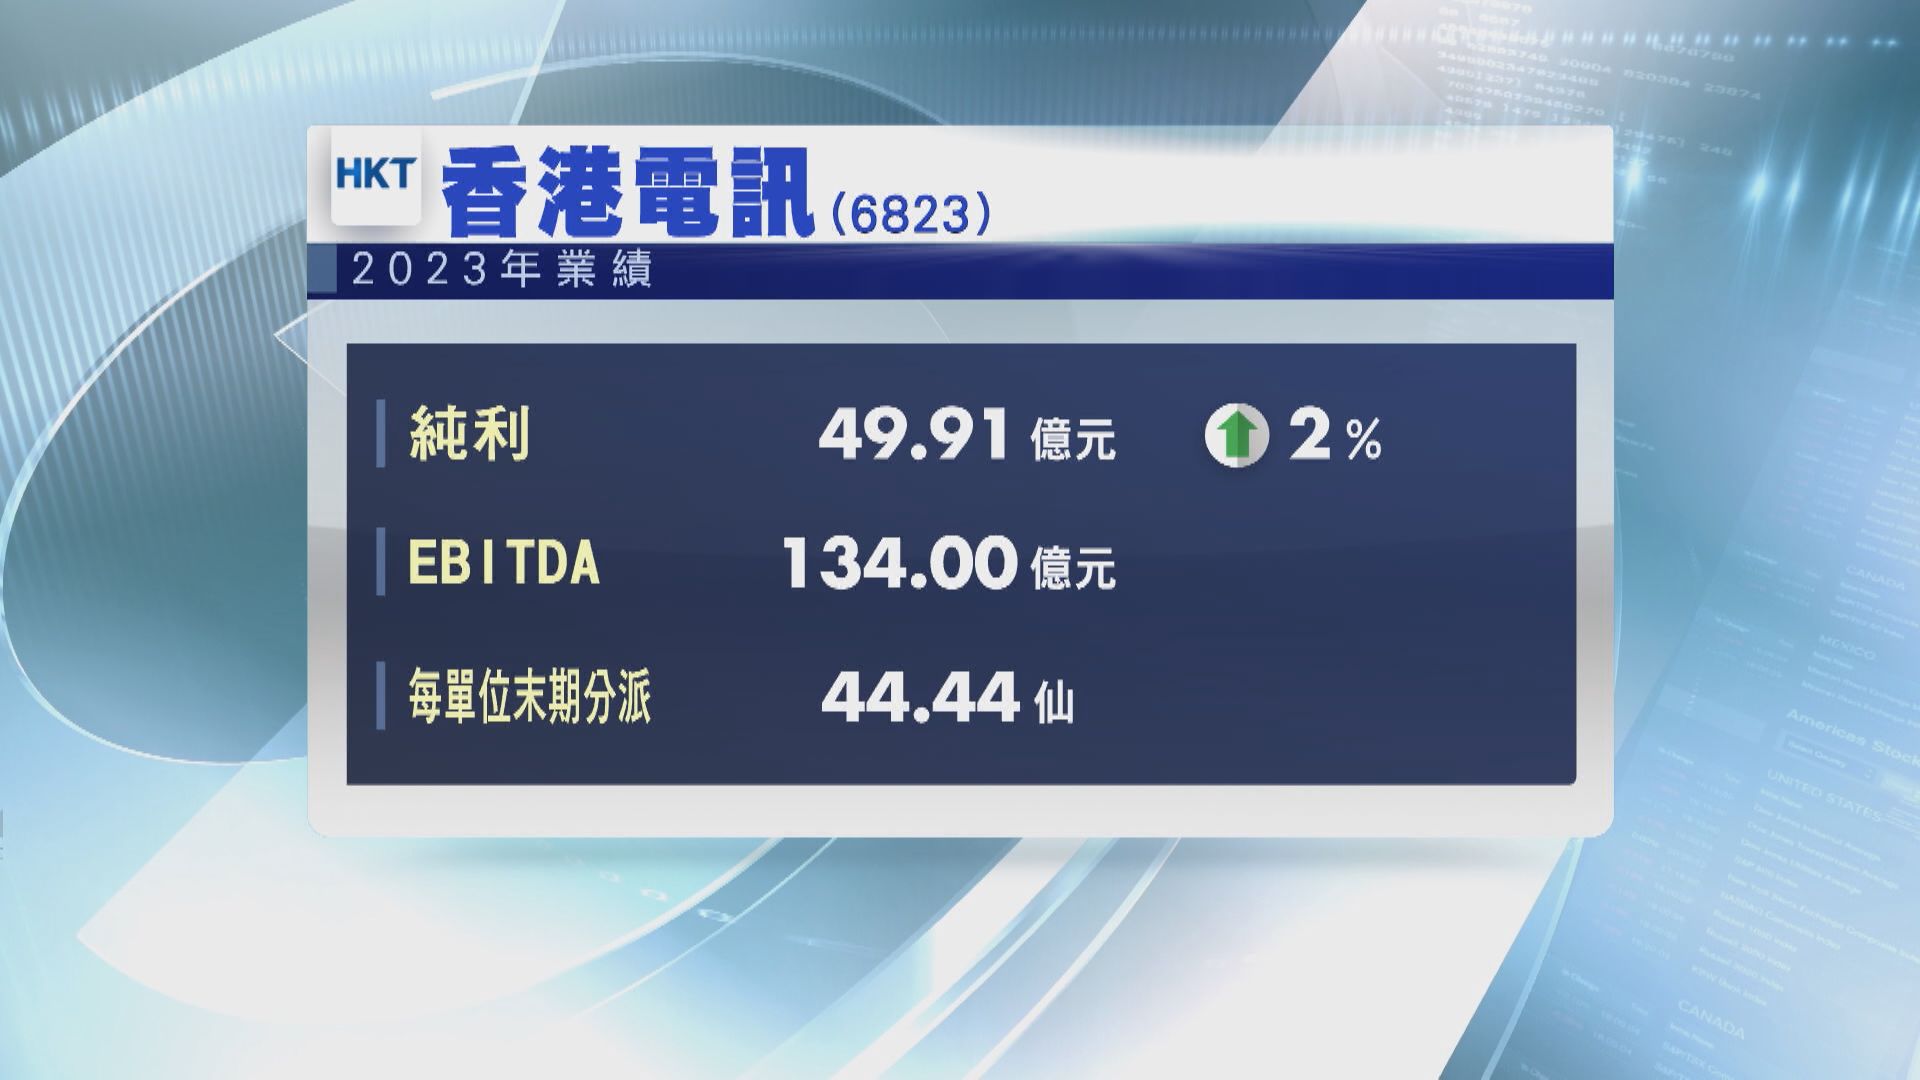 【業績速報】香港電訊去年EBITDA及經調整資金流均升3%